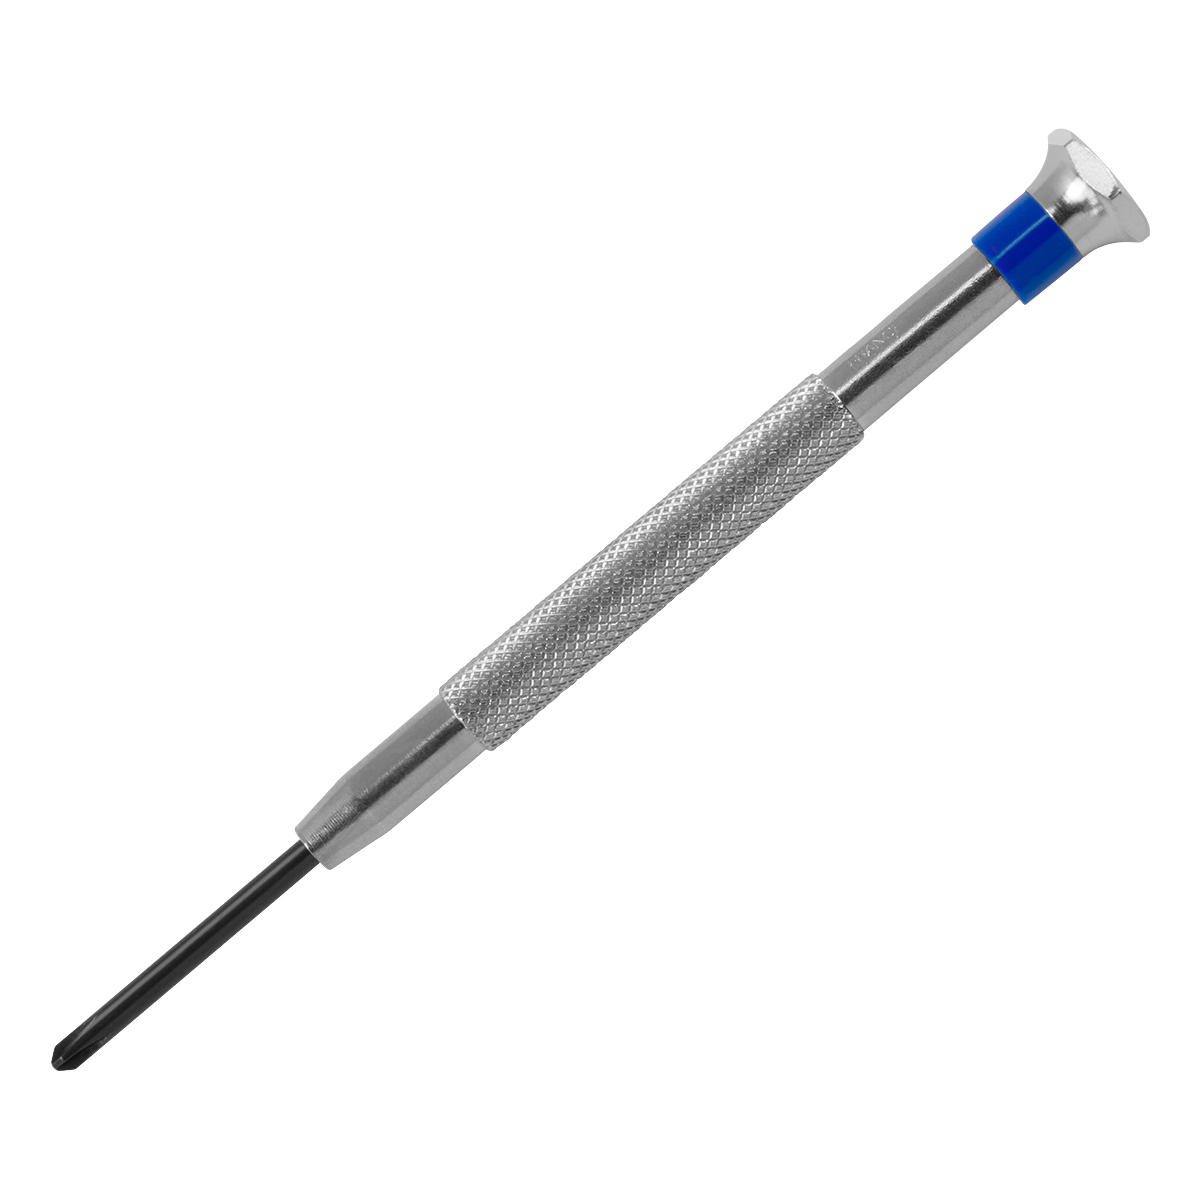 BasicPlus Schraubendreher, Kreuz, 2,5 mm, blau